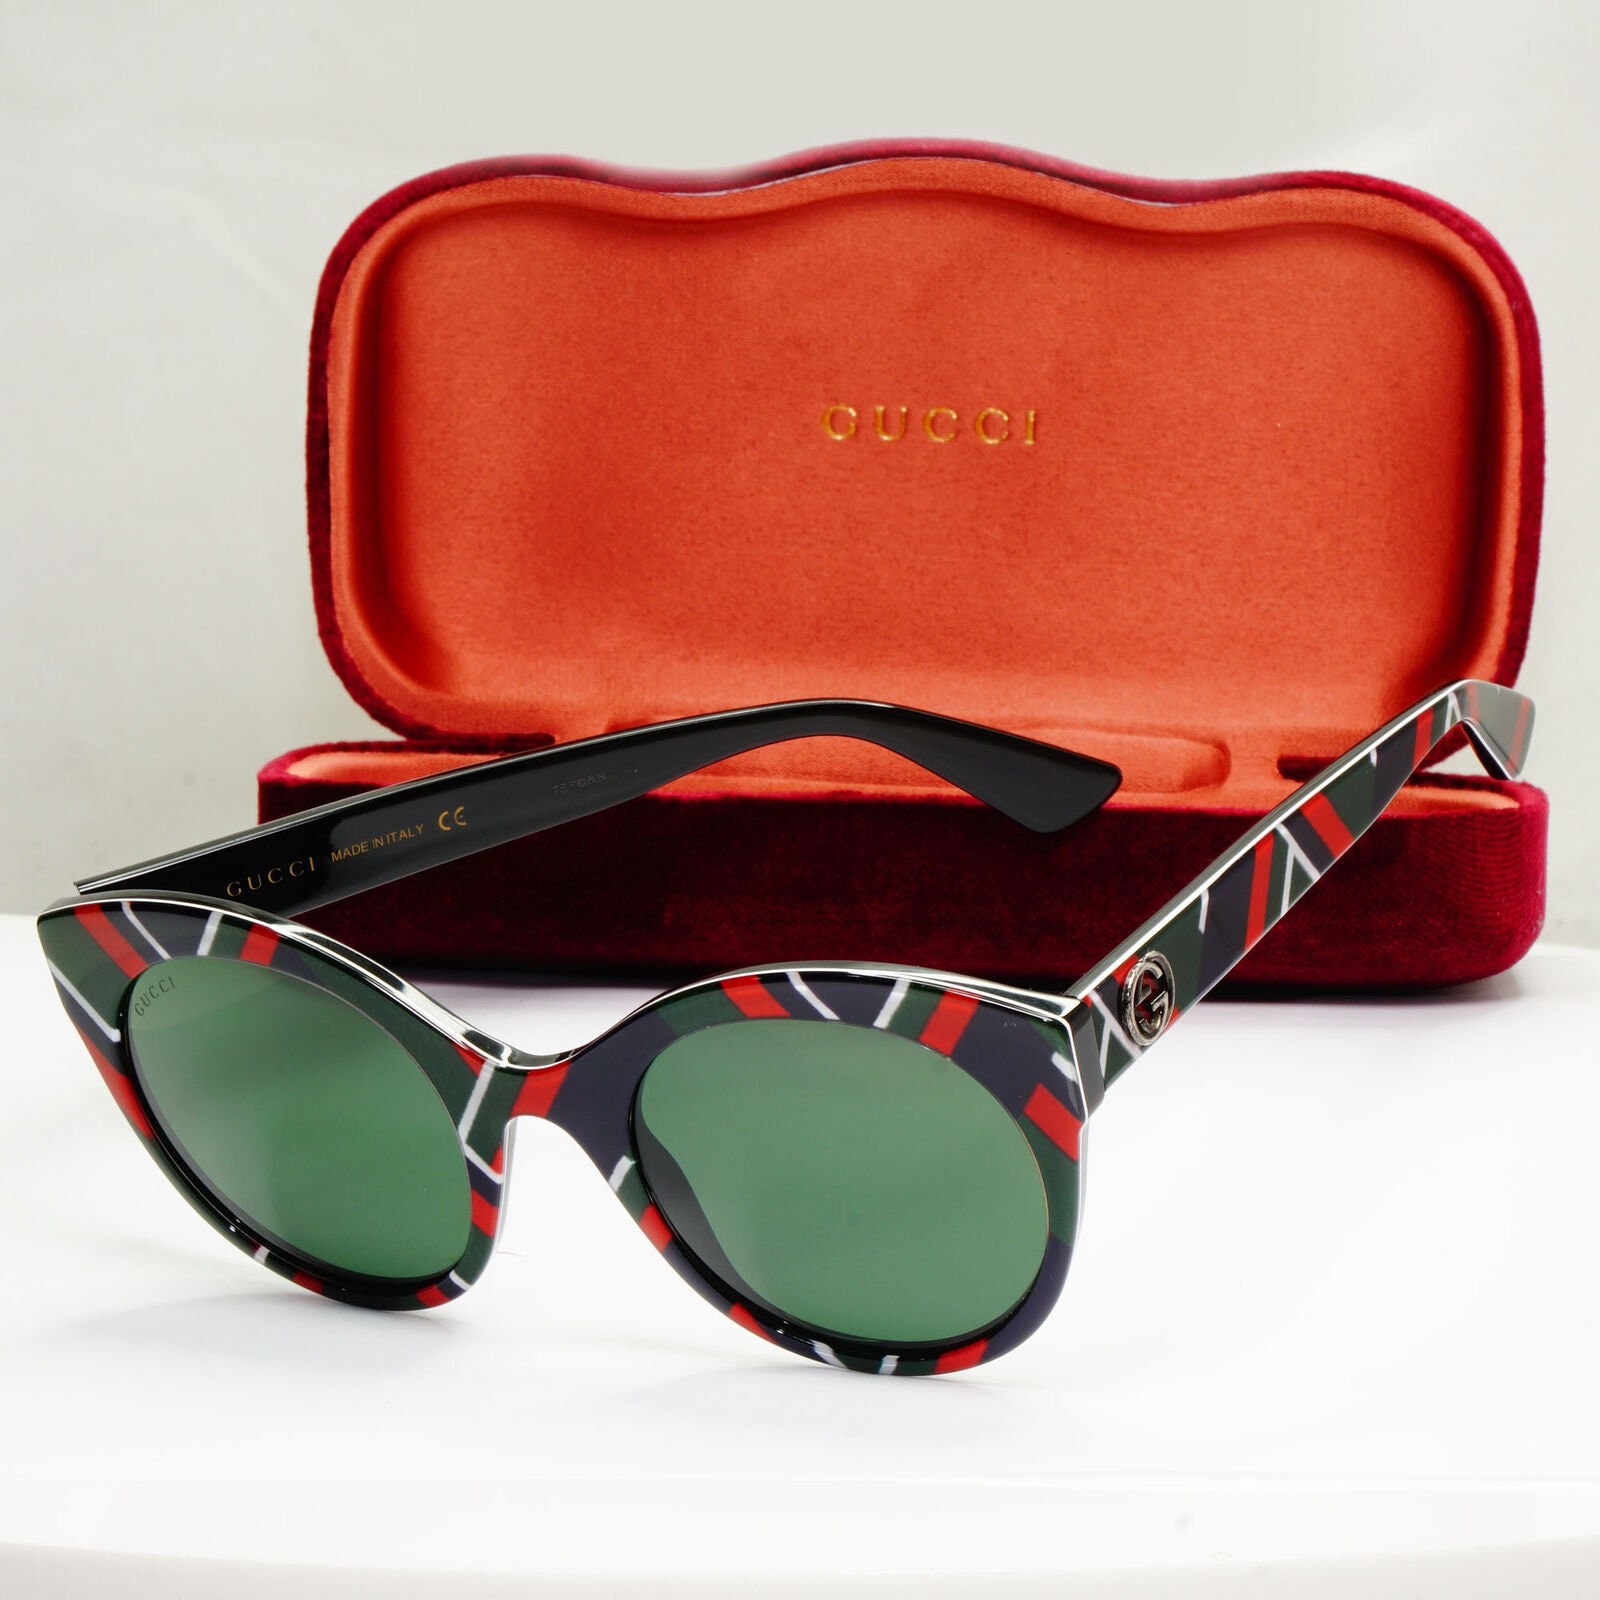 Sunglasses Gucci - Etsy